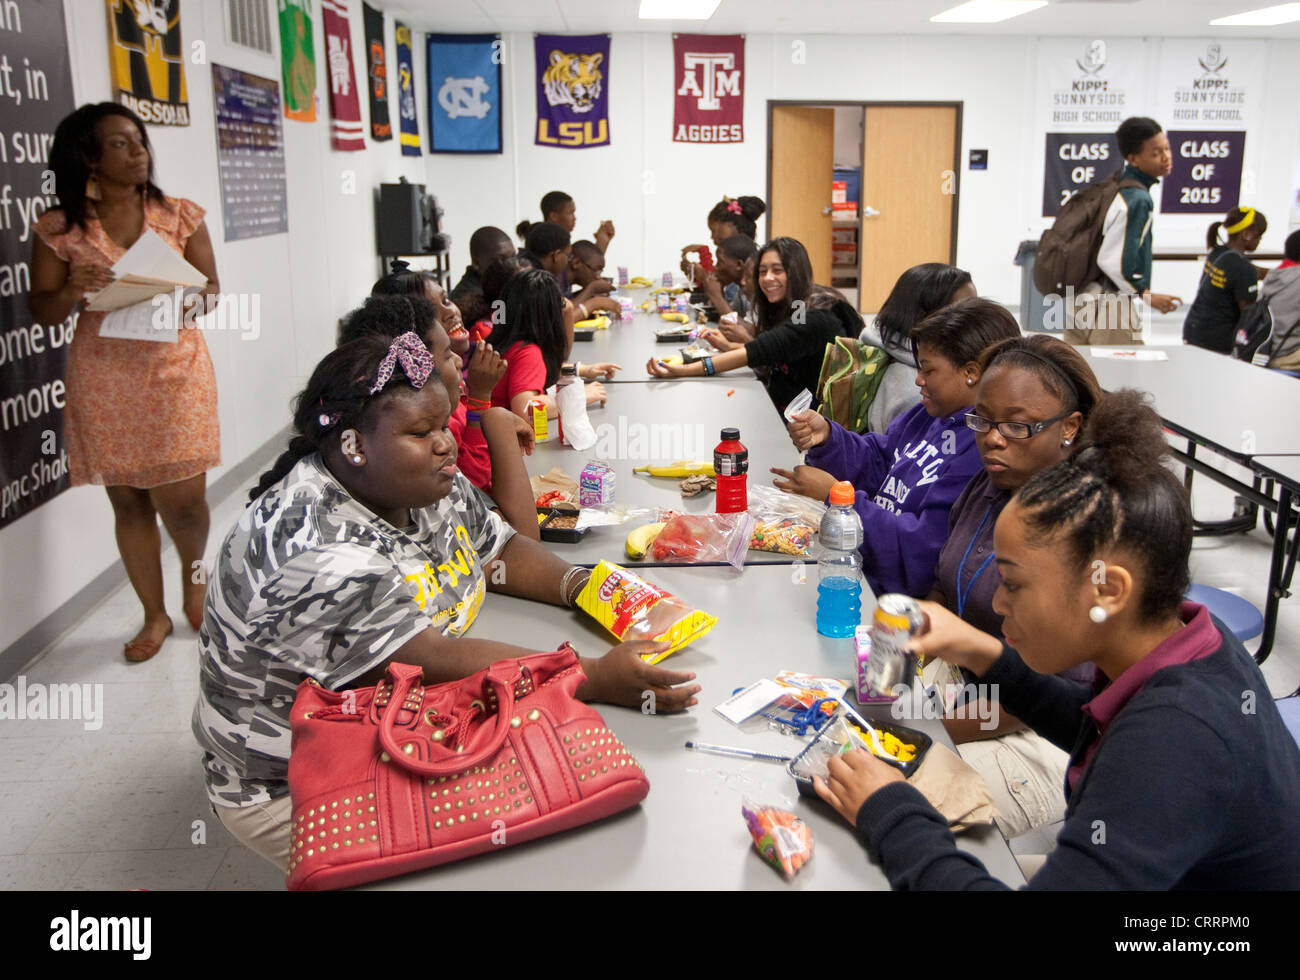 Grupos de estudiantes interactúan durante el almuerzo en una escuela pública en Houston, Texas Foto de stock